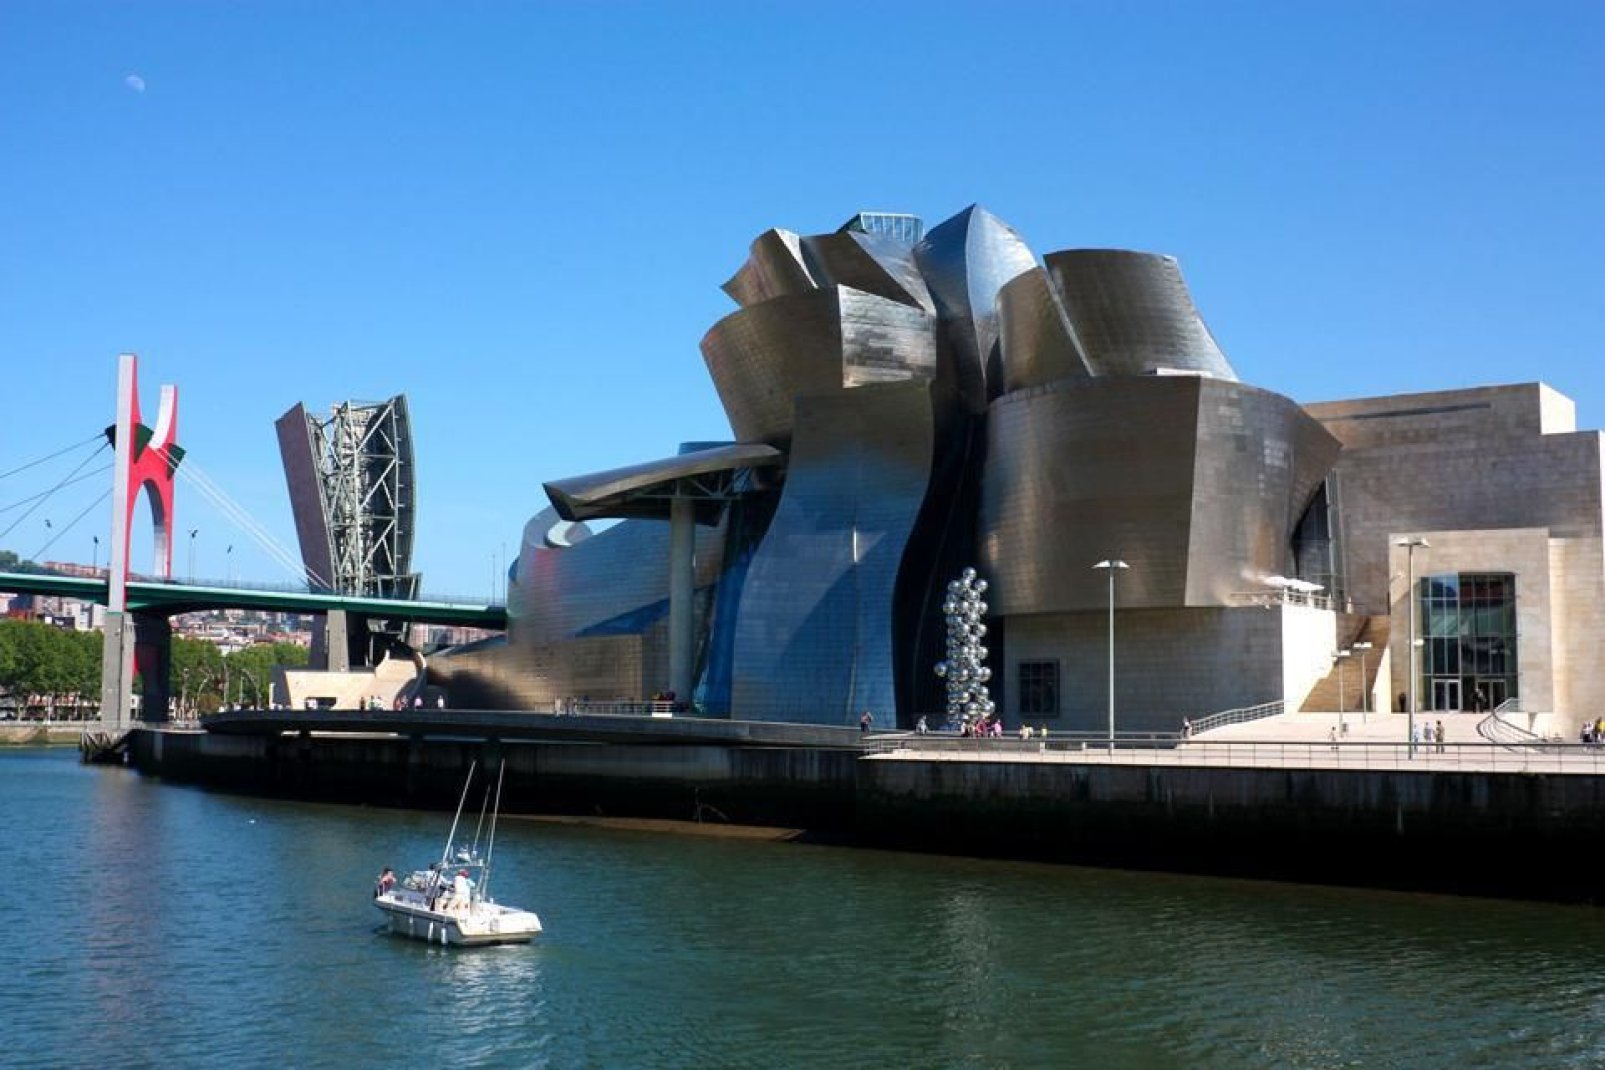 La struttura ideata e progettata da Frank Gehry simboleggia, per via della sua forma e dei materiali utilizzati, l'industria navale.